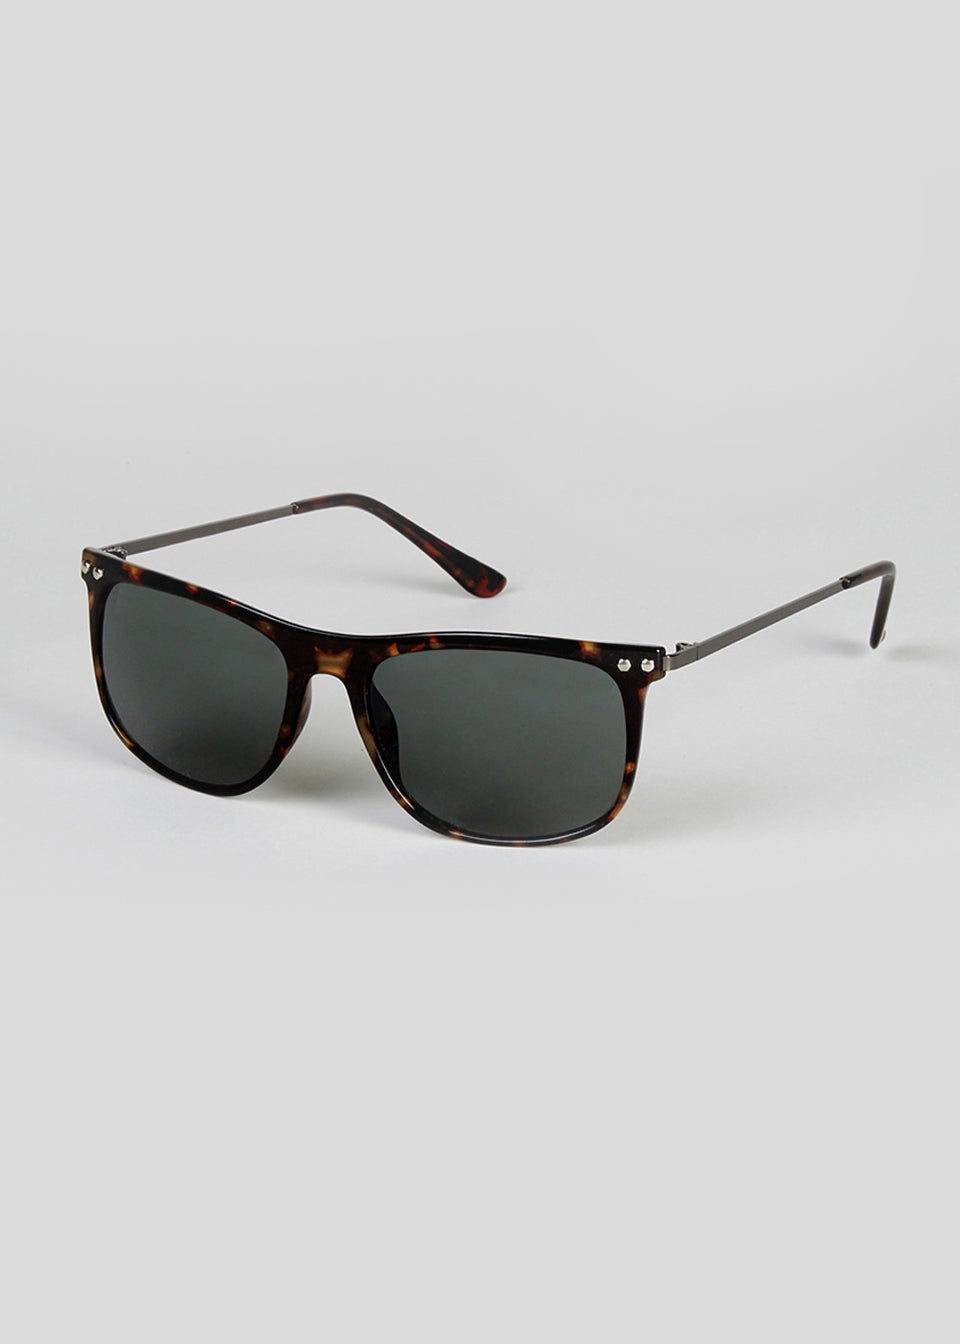 Foster Grant Tortoiseshell Wayfarer Sunglasses